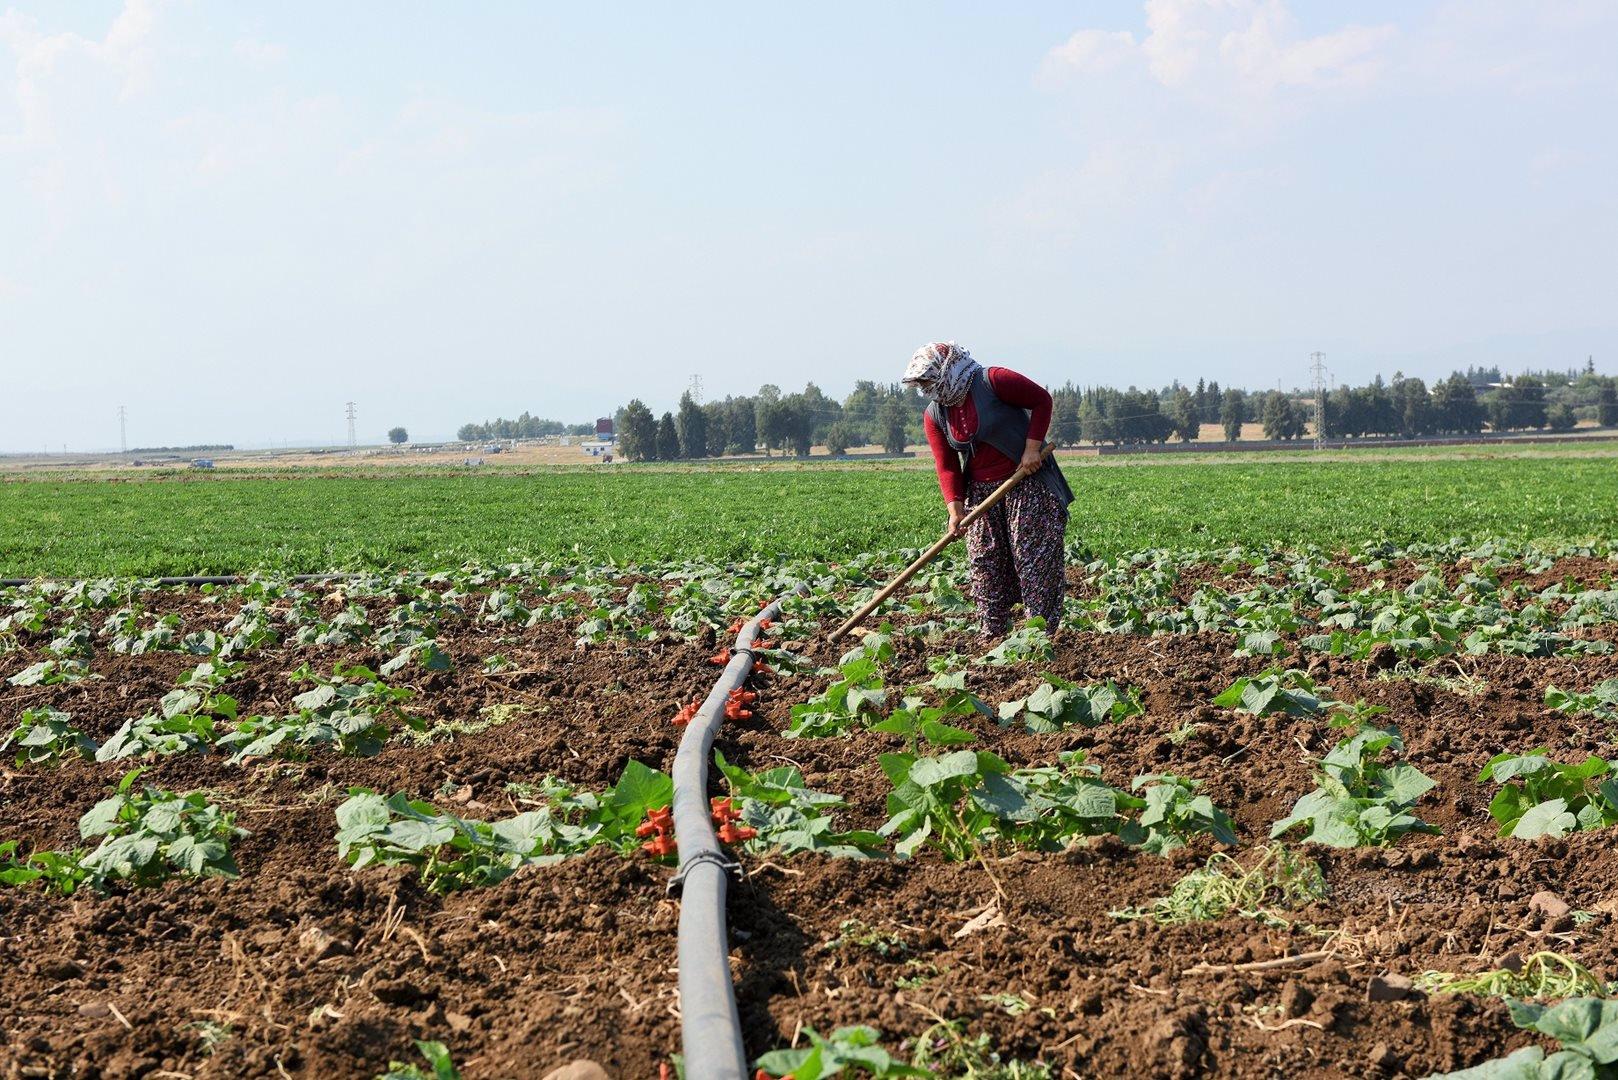 المرحلة الثانية المتمثلة في تحسين كفاءة استخدام المياه في الزراعة.